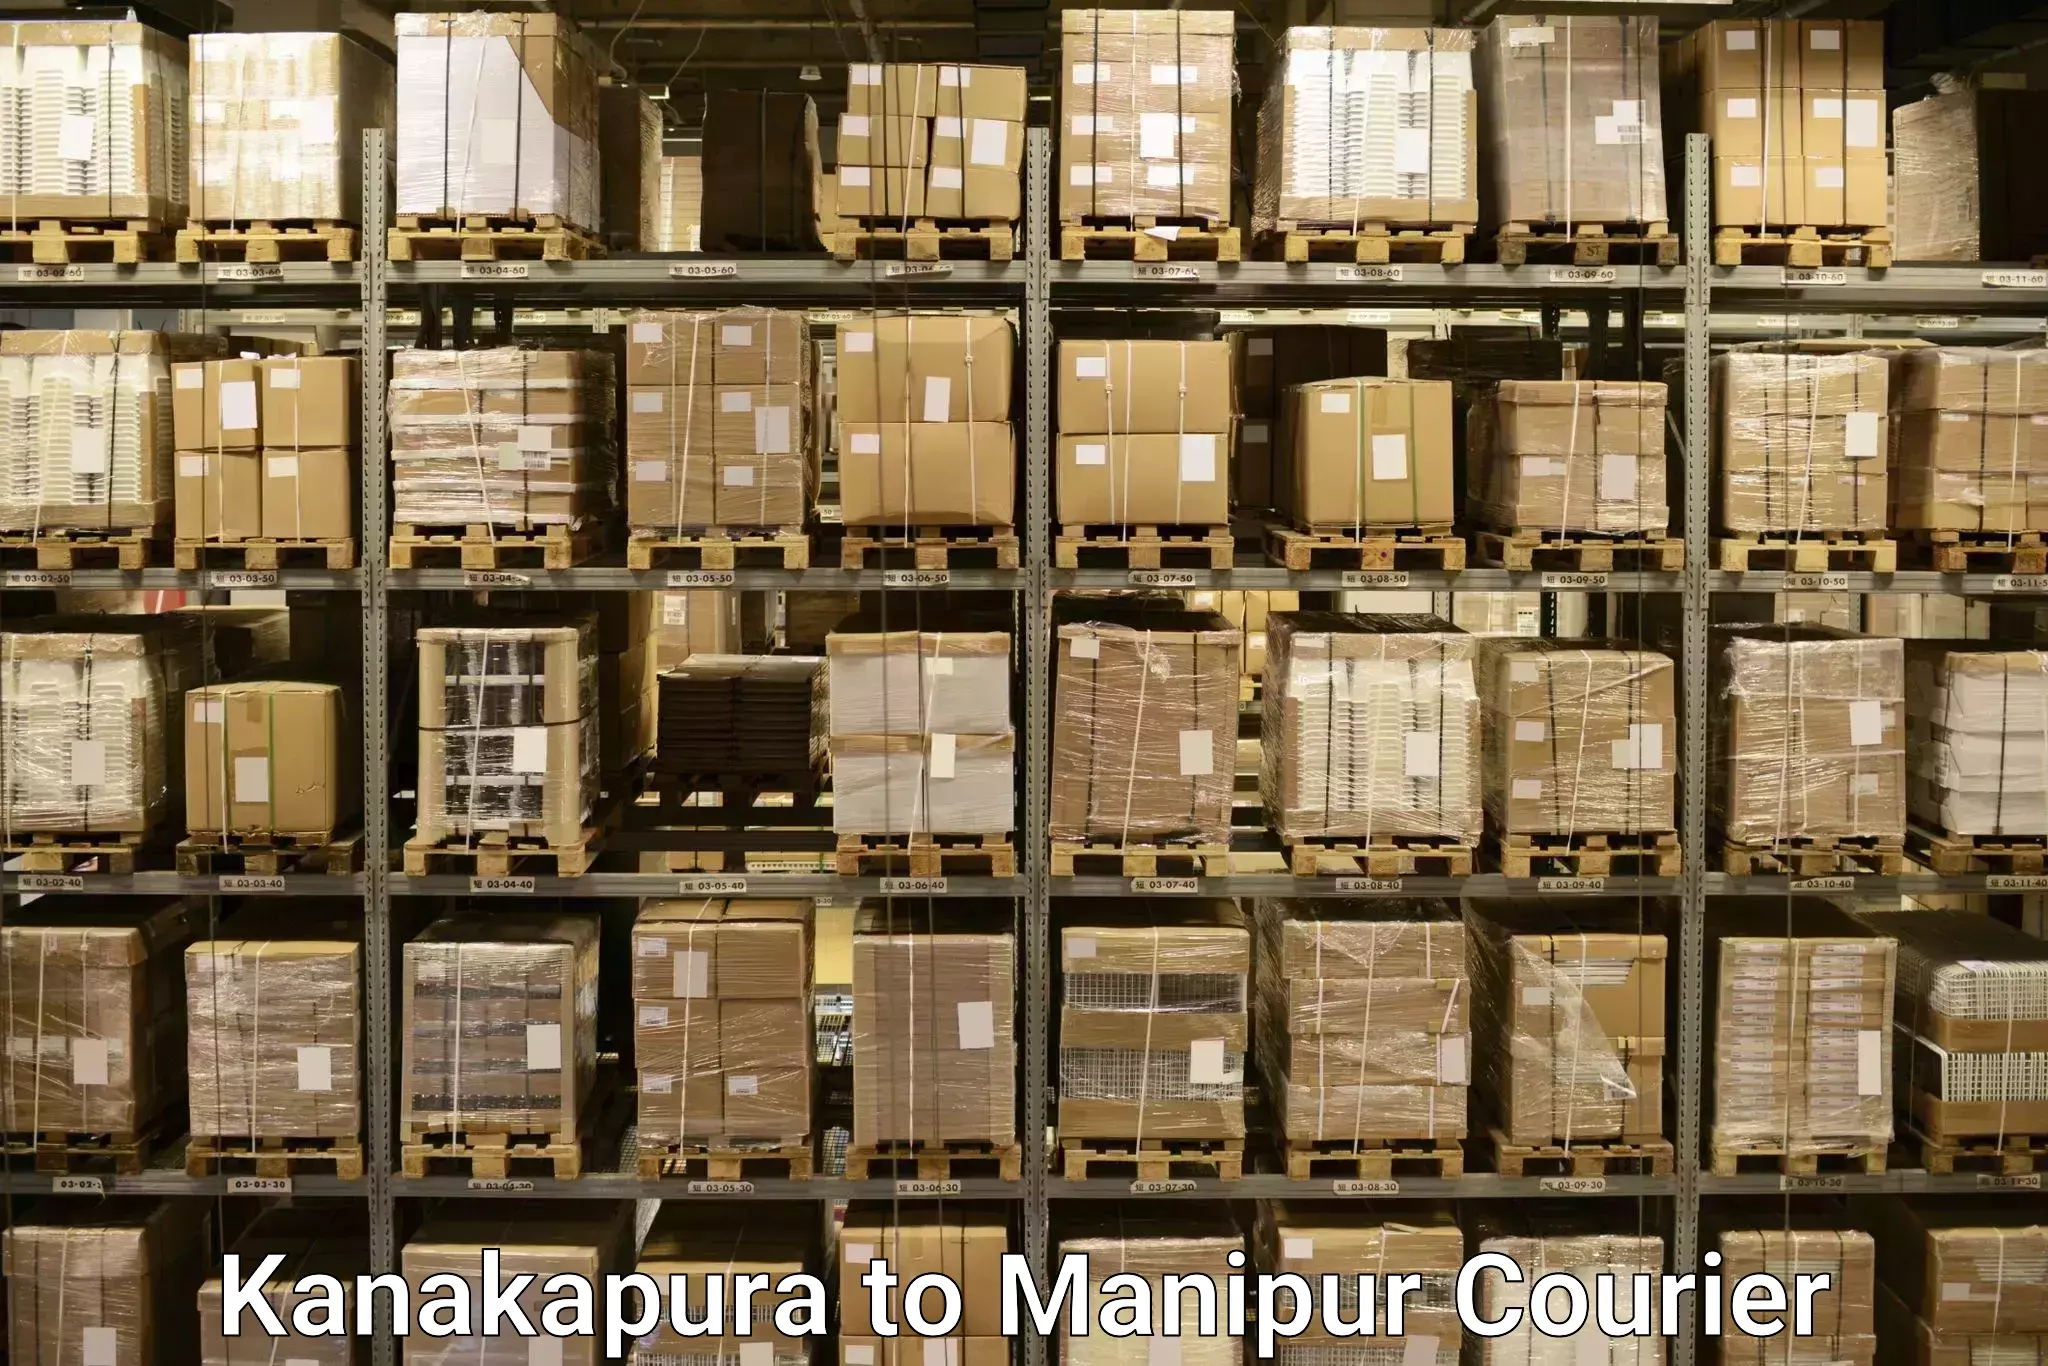 Luggage delivery network Kanakapura to Thoubal